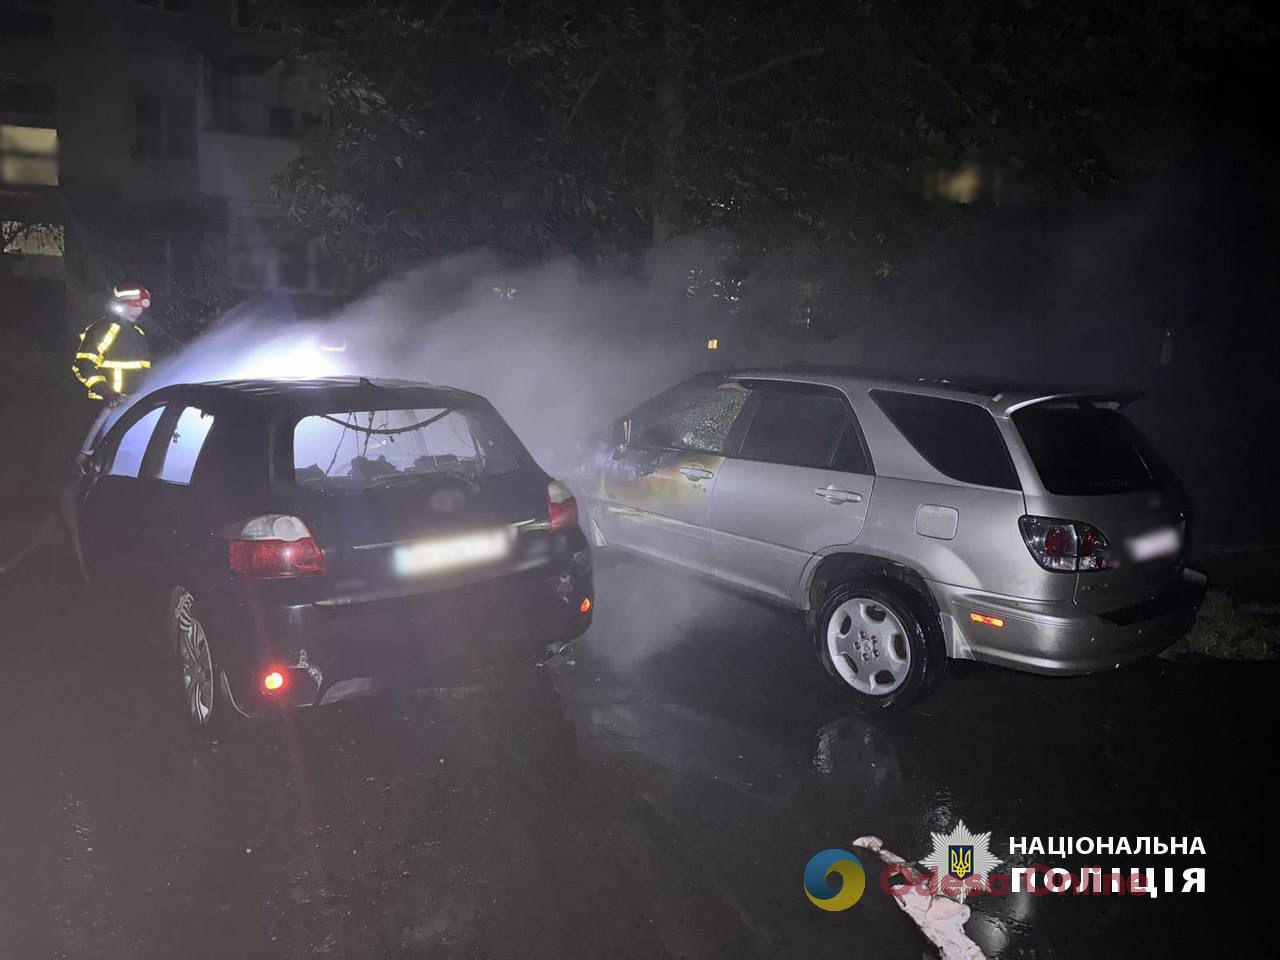 В Одесской области парень взял заказ на поджог чужого авто, но все перепутал (видео)